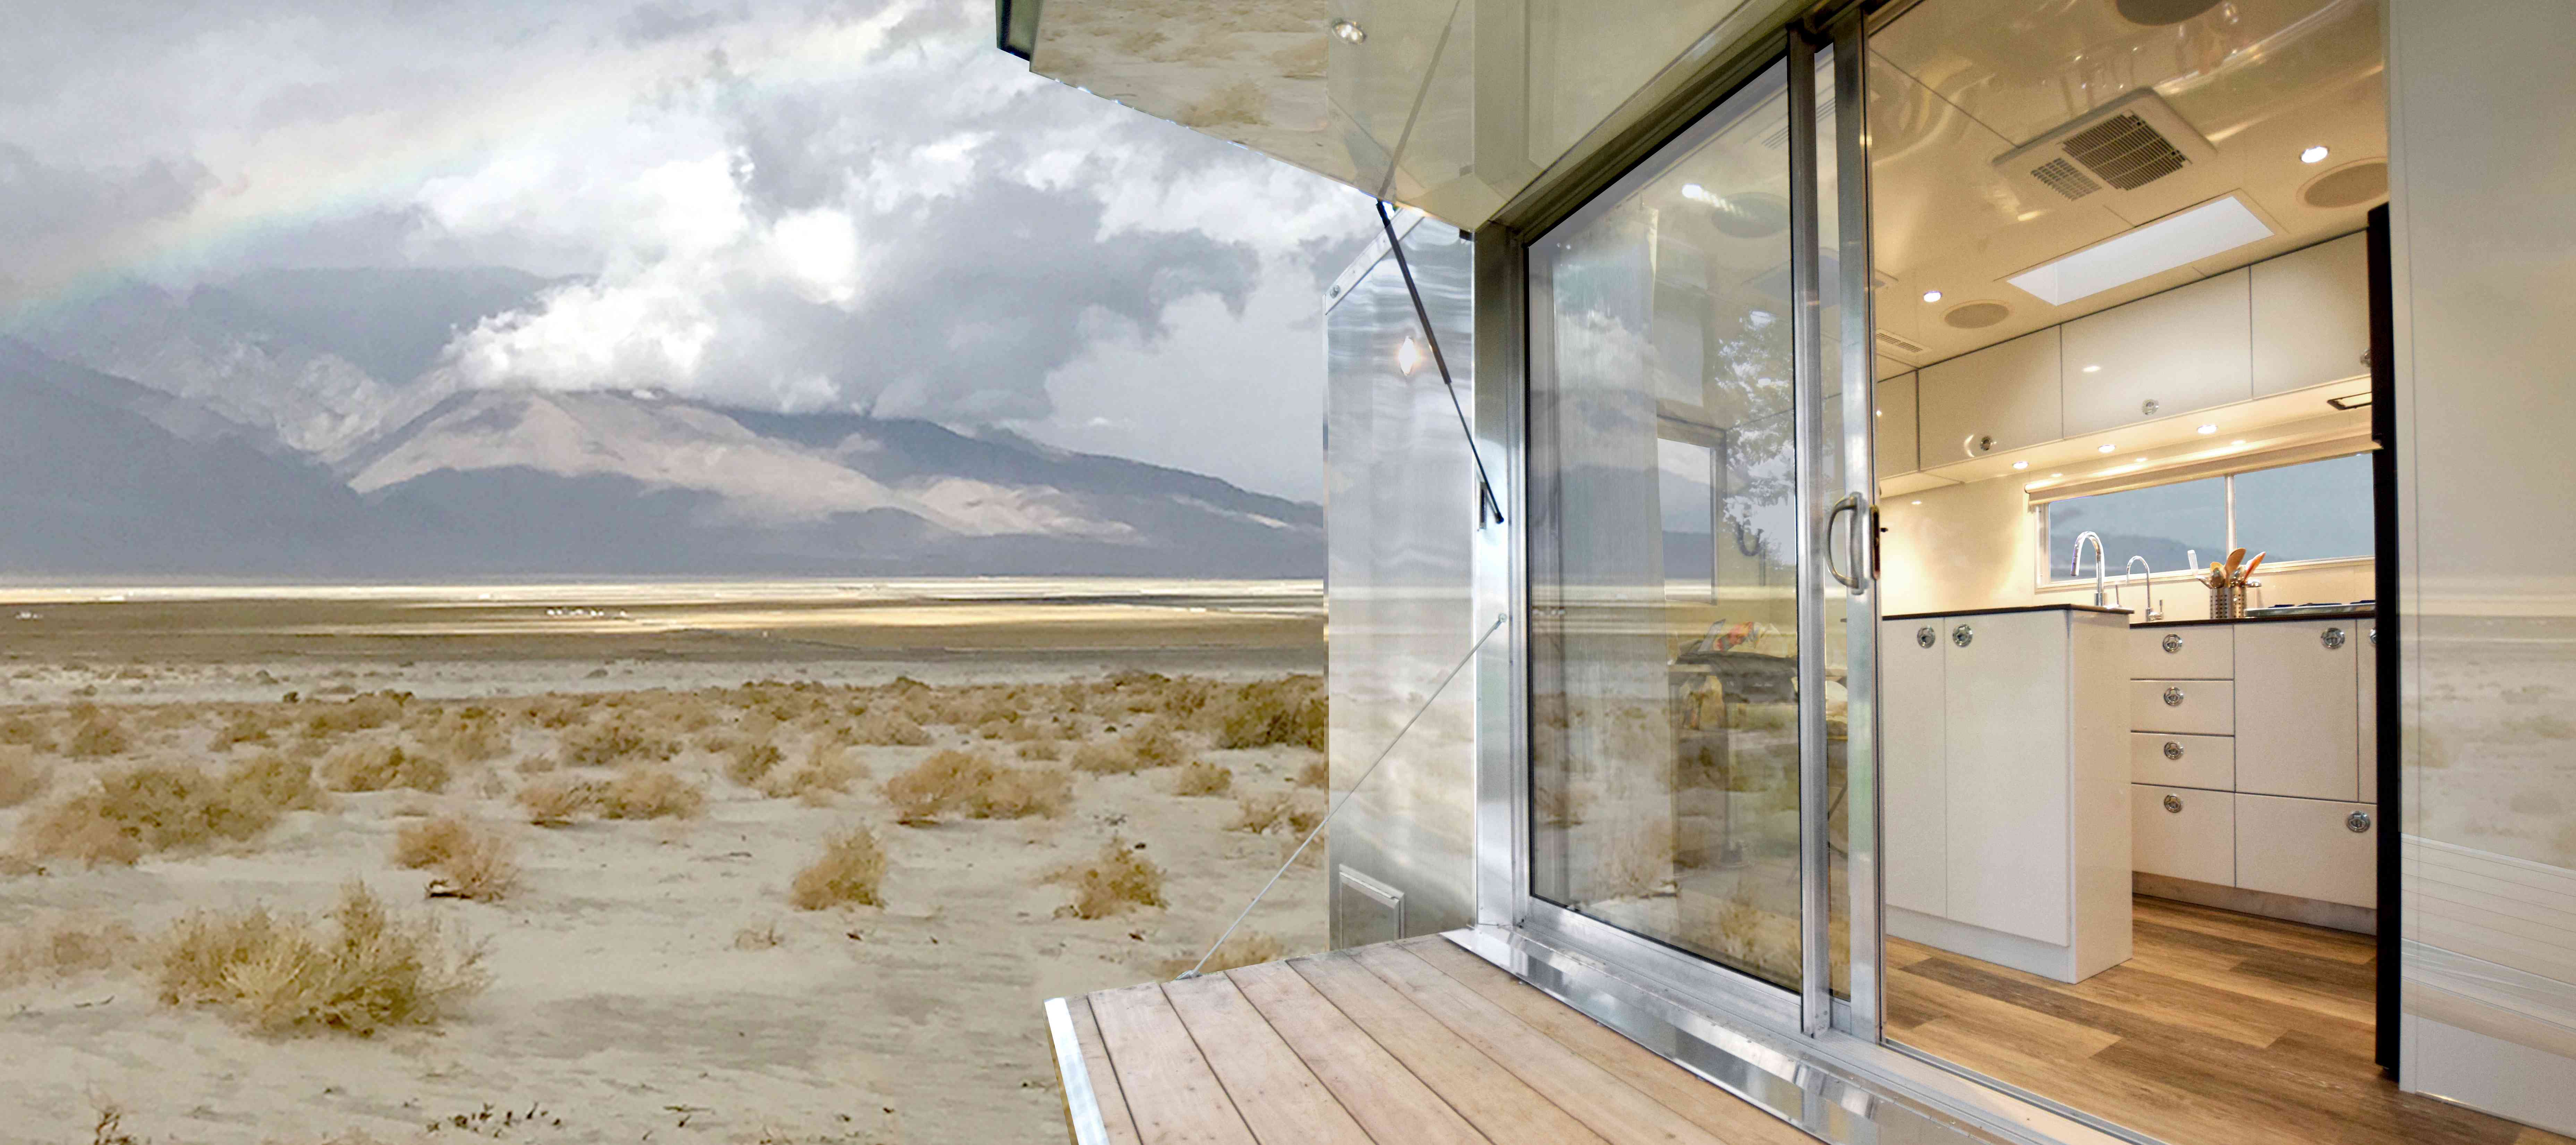 沙漠的外观和玻璃门背景中的山